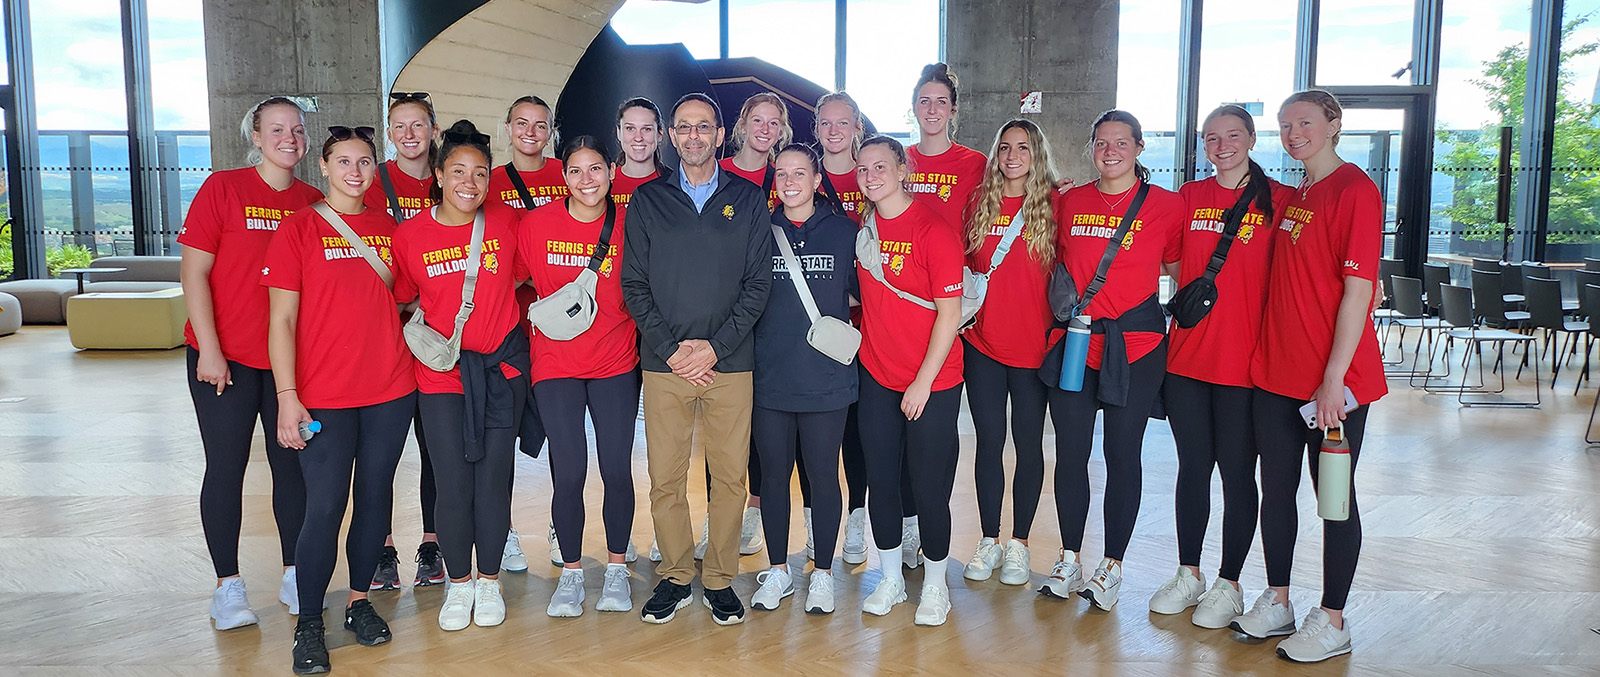 Un alumno de Ferris State que vive y trabaja en España conoció al equipo de voleibol Bulldog en su viaje al extranjero.